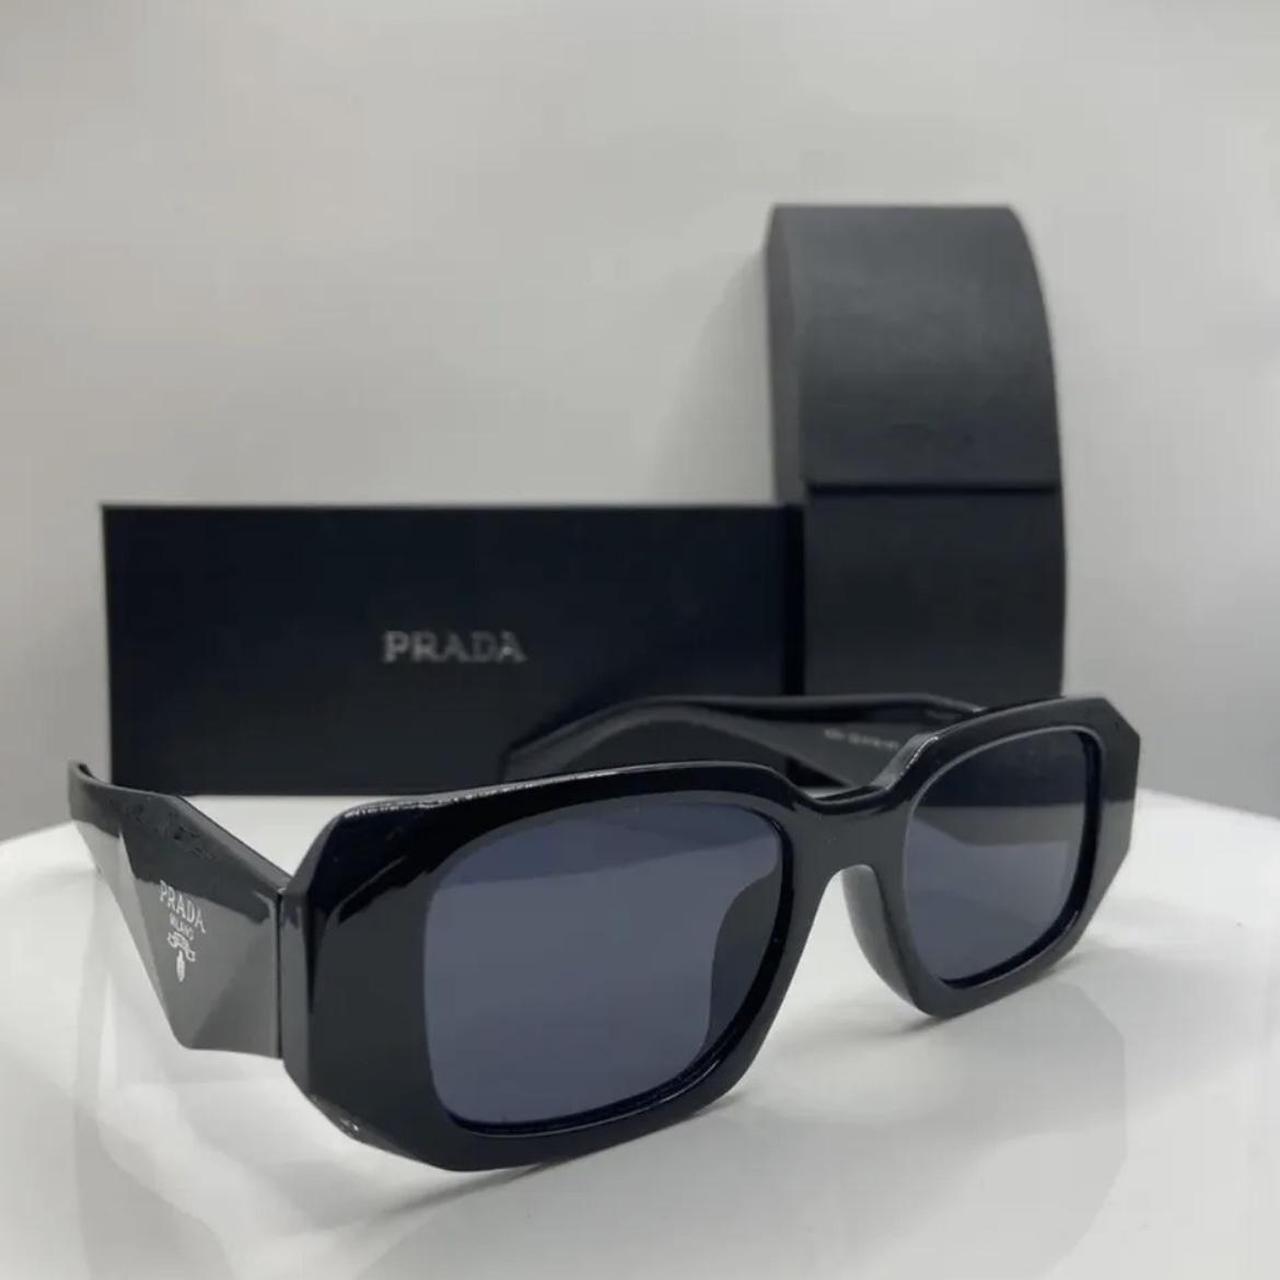 Prada PR17 WS Sunglasses (new)! Got them as a gift... - Depop